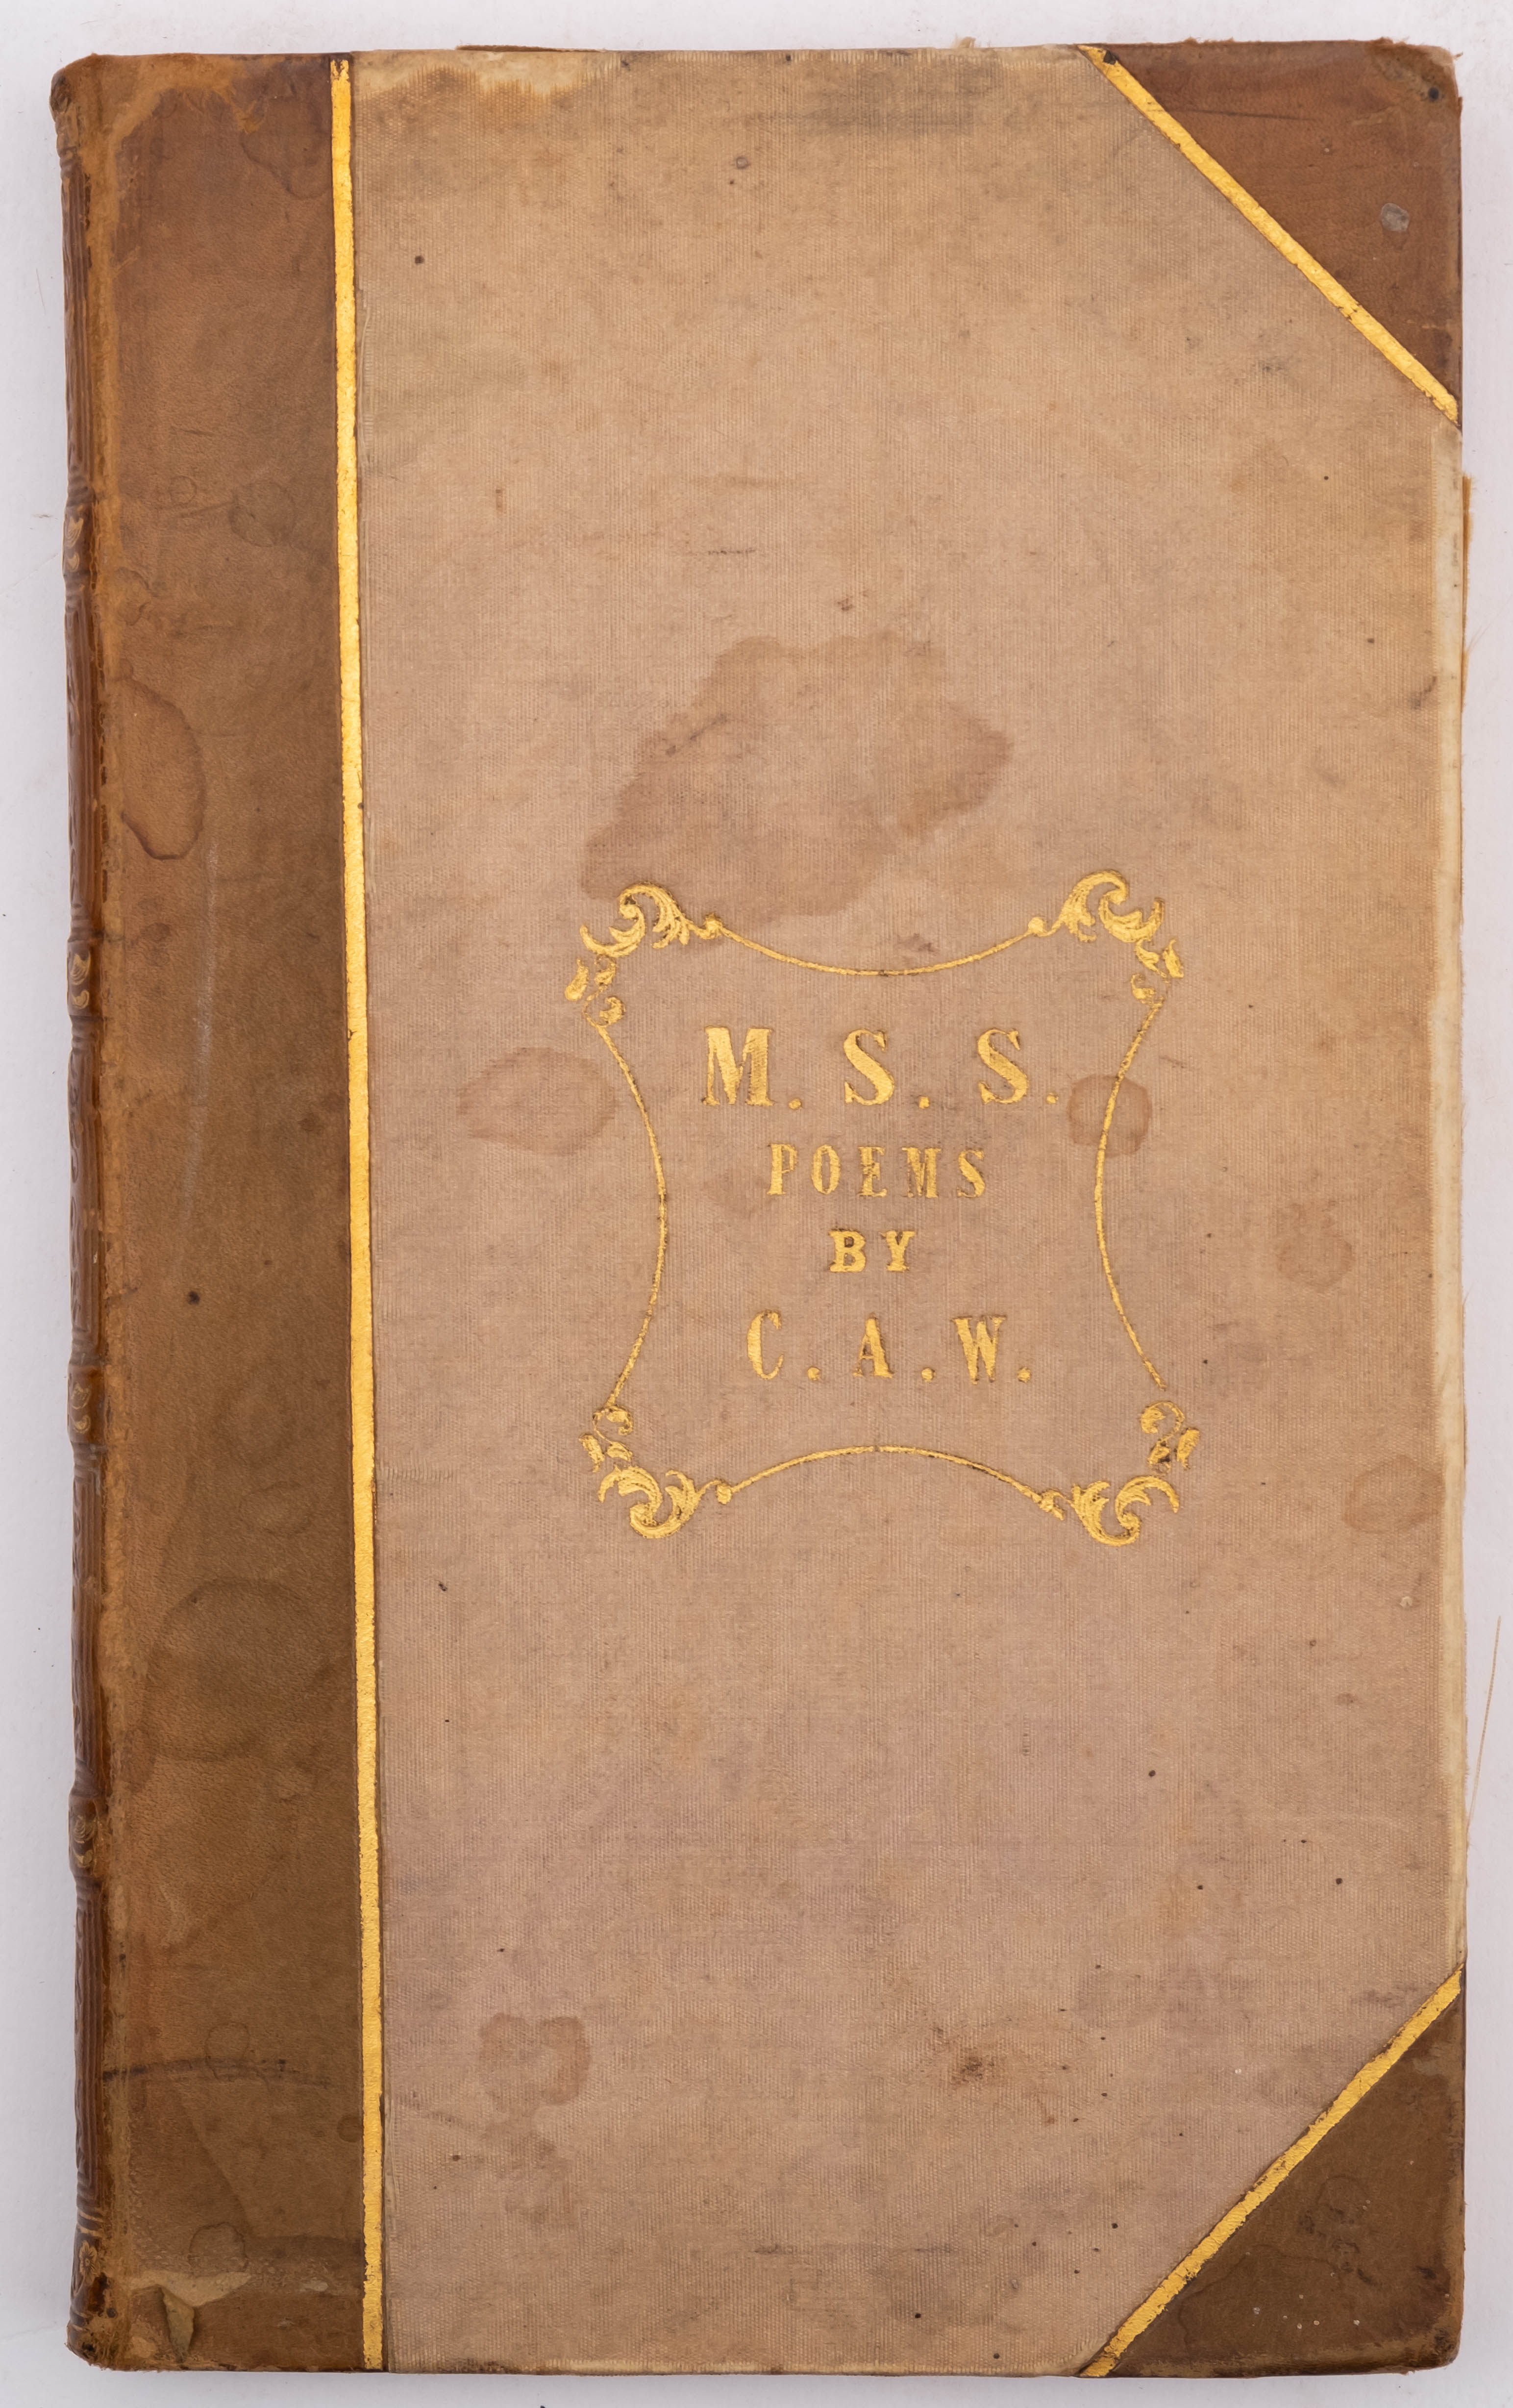 C. A. W - M. S. S. Poems. half calf, 8vo, c1830s. - Image 3 of 4